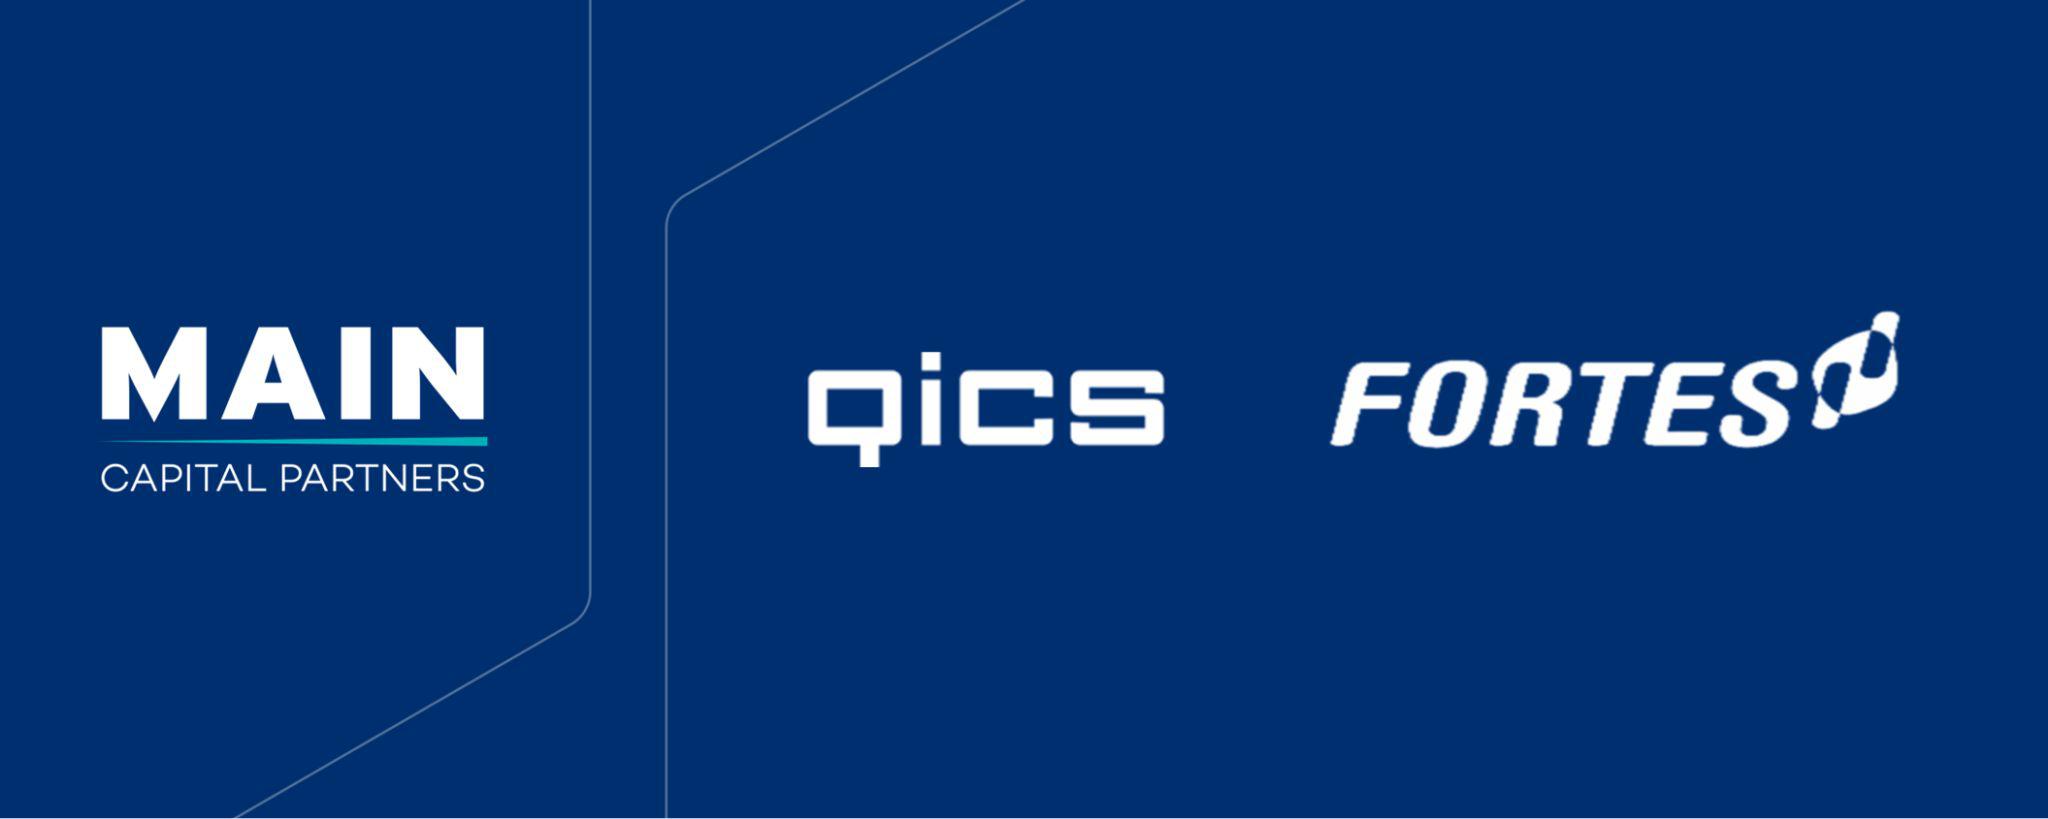 Qics breidt positie in de Project &amp; Project Management (PPM) markt uit met strategische overname van Fortes